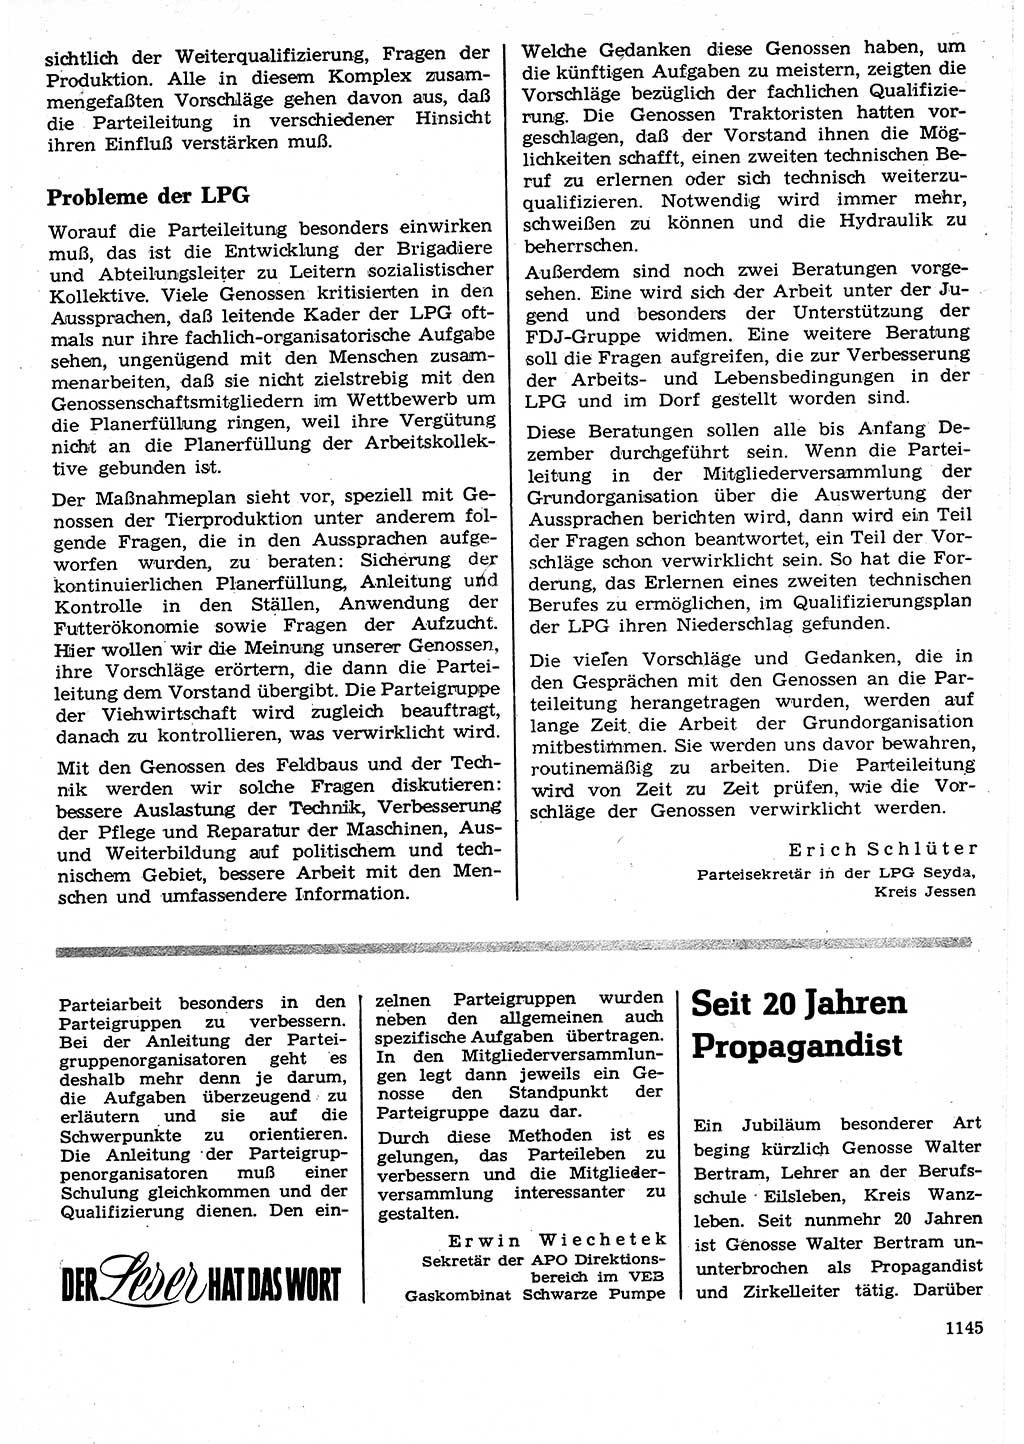 Neuer Weg (NW), Organ des Zentralkomitees (ZK) der SED (Sozialistische Einheitspartei Deutschlands) für Fragen des Parteilebens, 25. Jahrgang [Deutsche Demokratische Republik (DDR)] 1970, Seite 1145 (NW ZK SED DDR 1970, S. 1145)